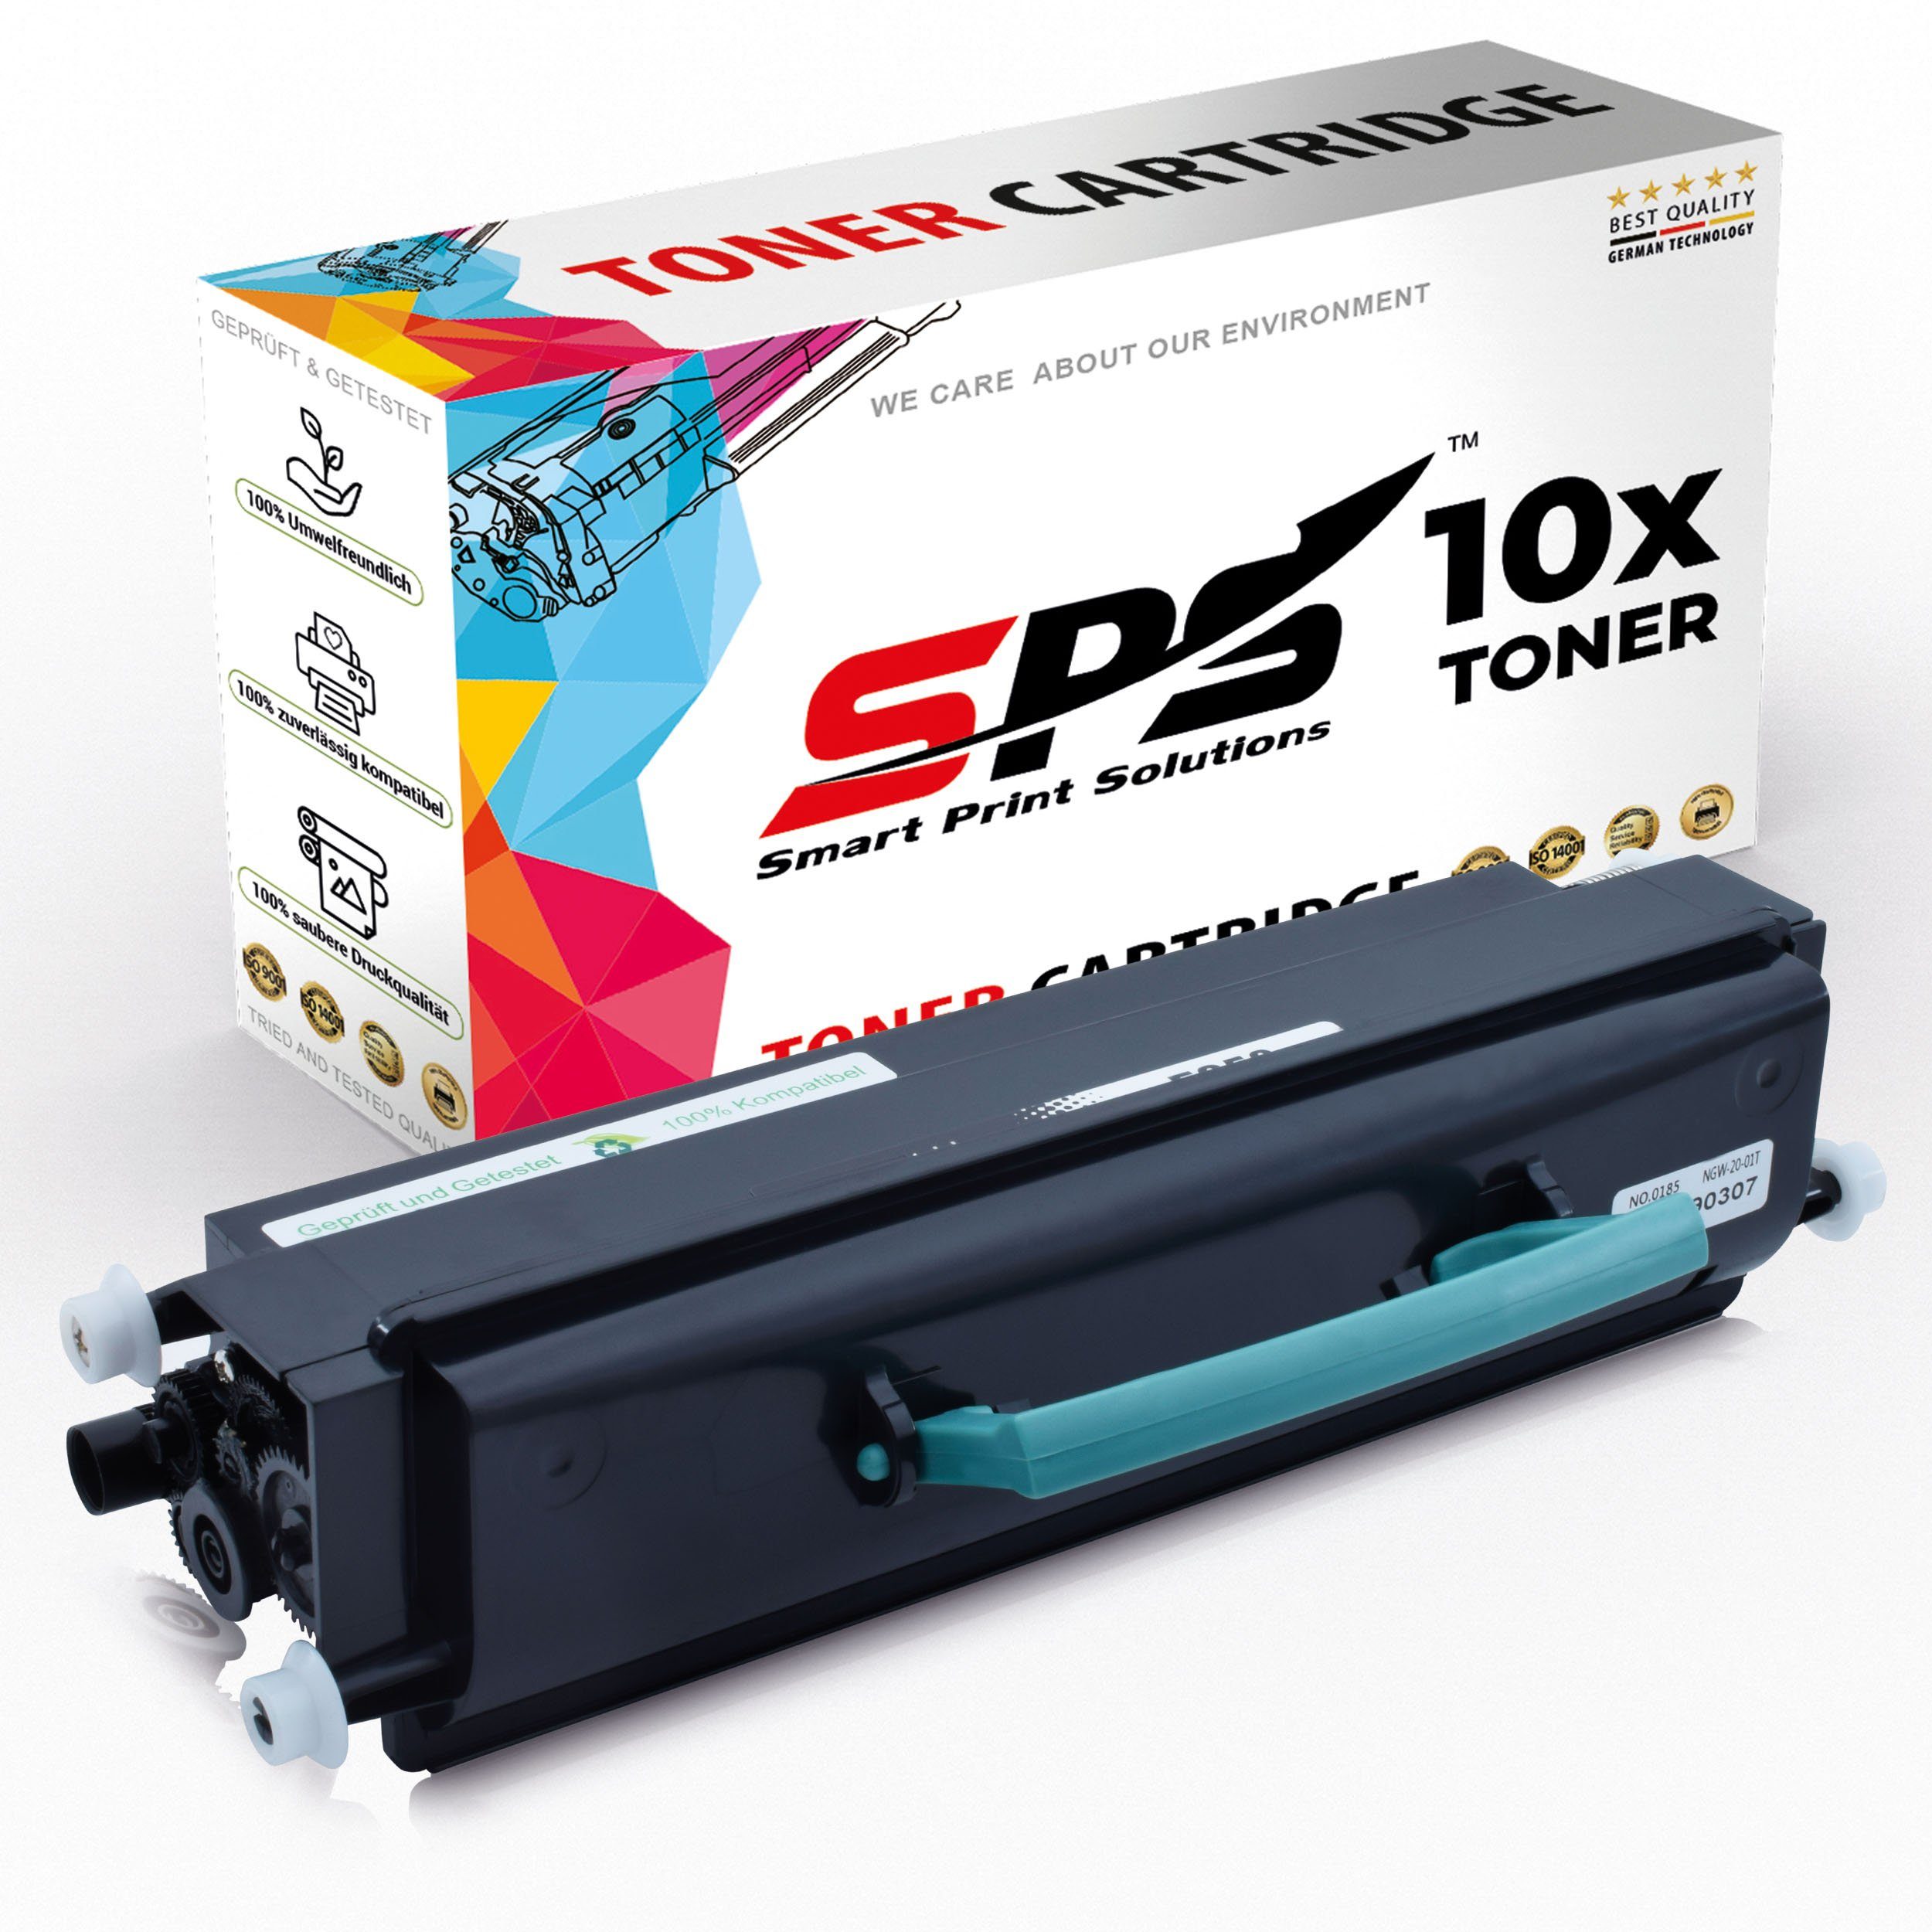 SPS Tonerkartusche Kompatibel für Lexmark E250A21E, Optra (10er E352 Pack)